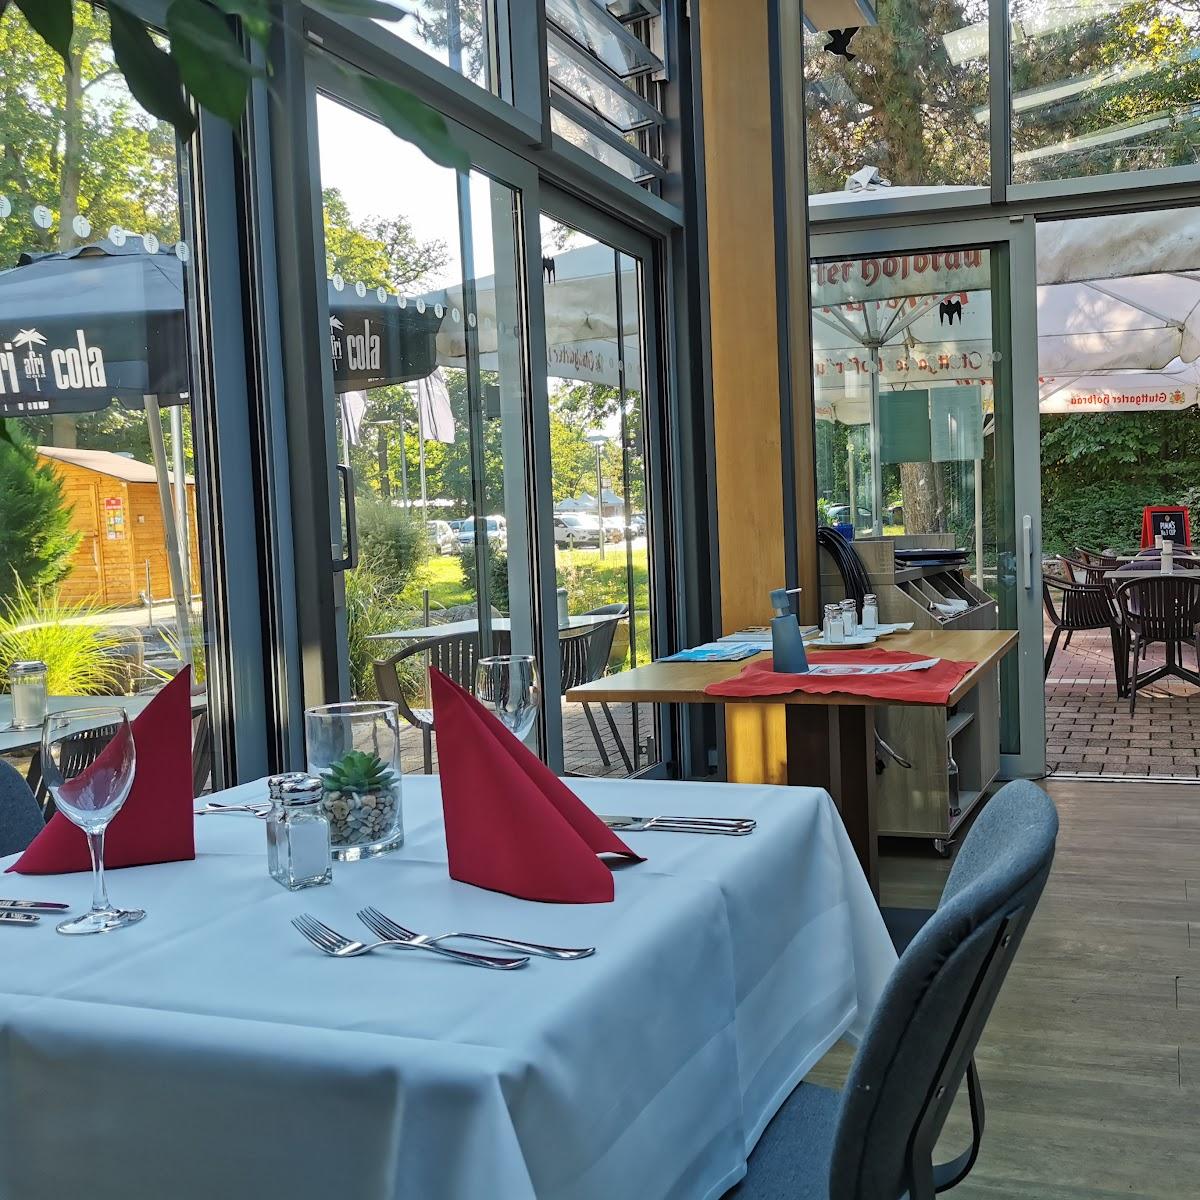 Restaurant "Leonhardts" in Stuttgart